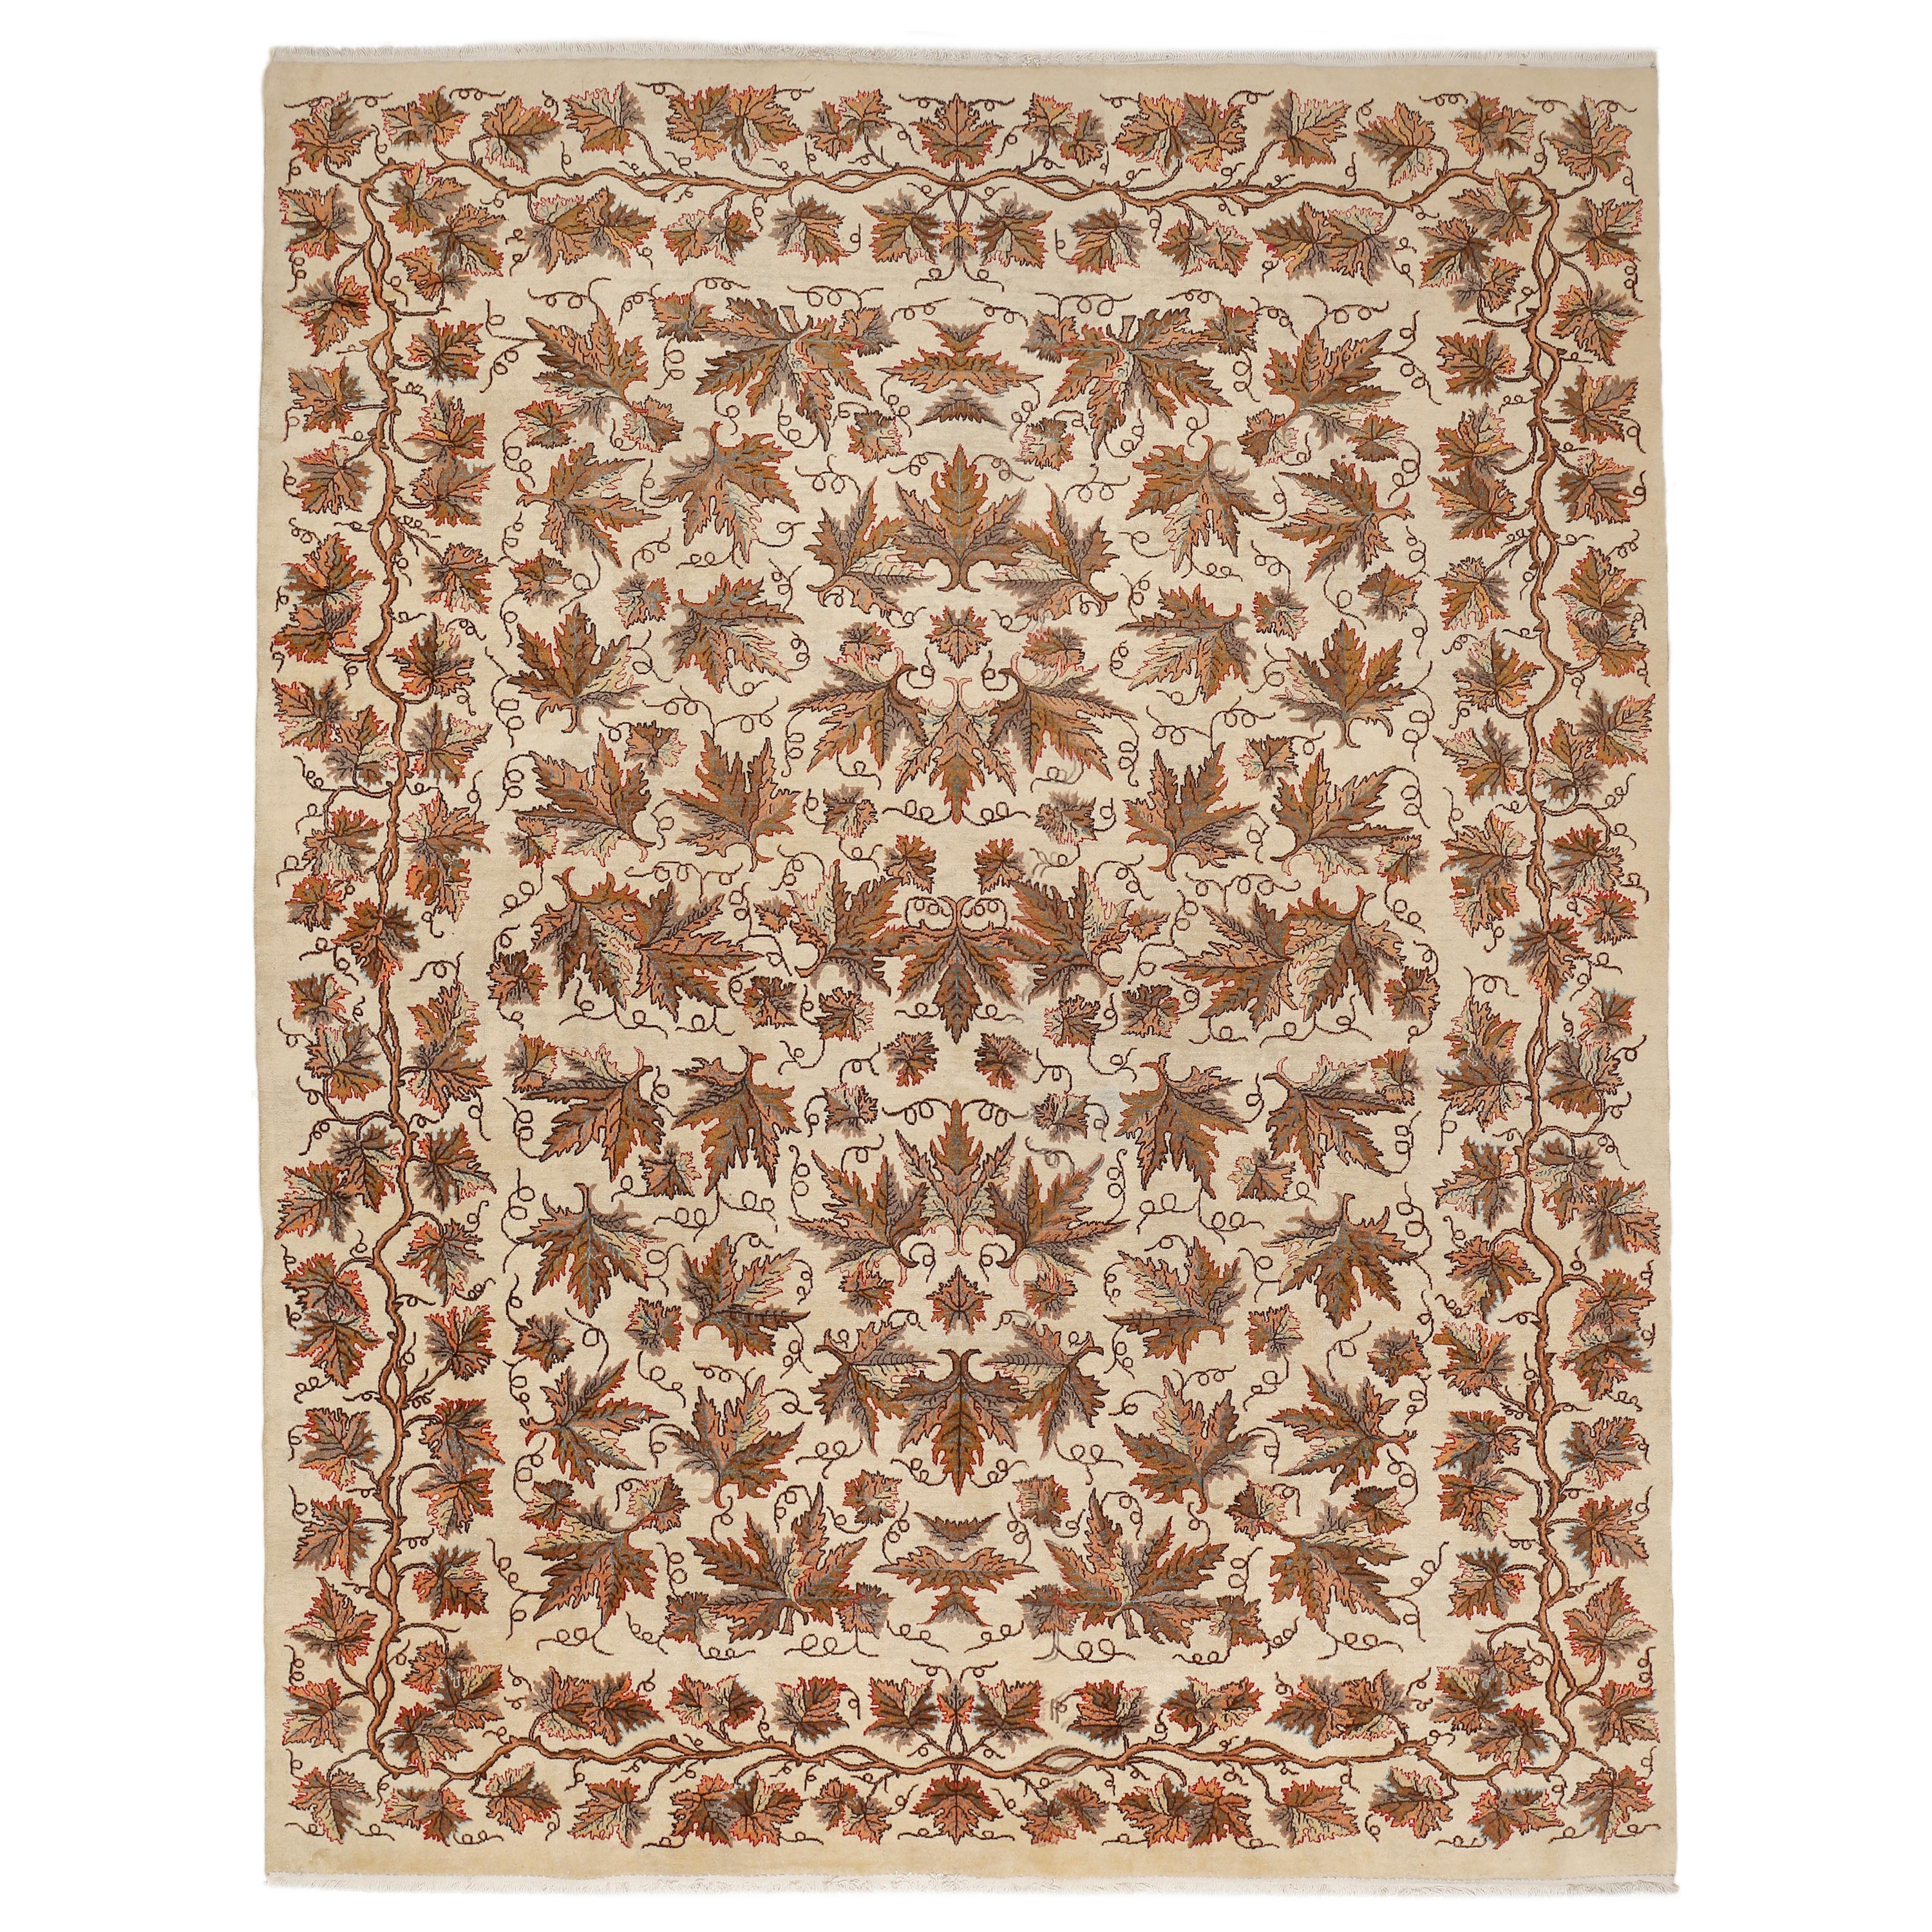 Modernistischer Teppich mit cremefarbenem Grund und Eichenblattblättern